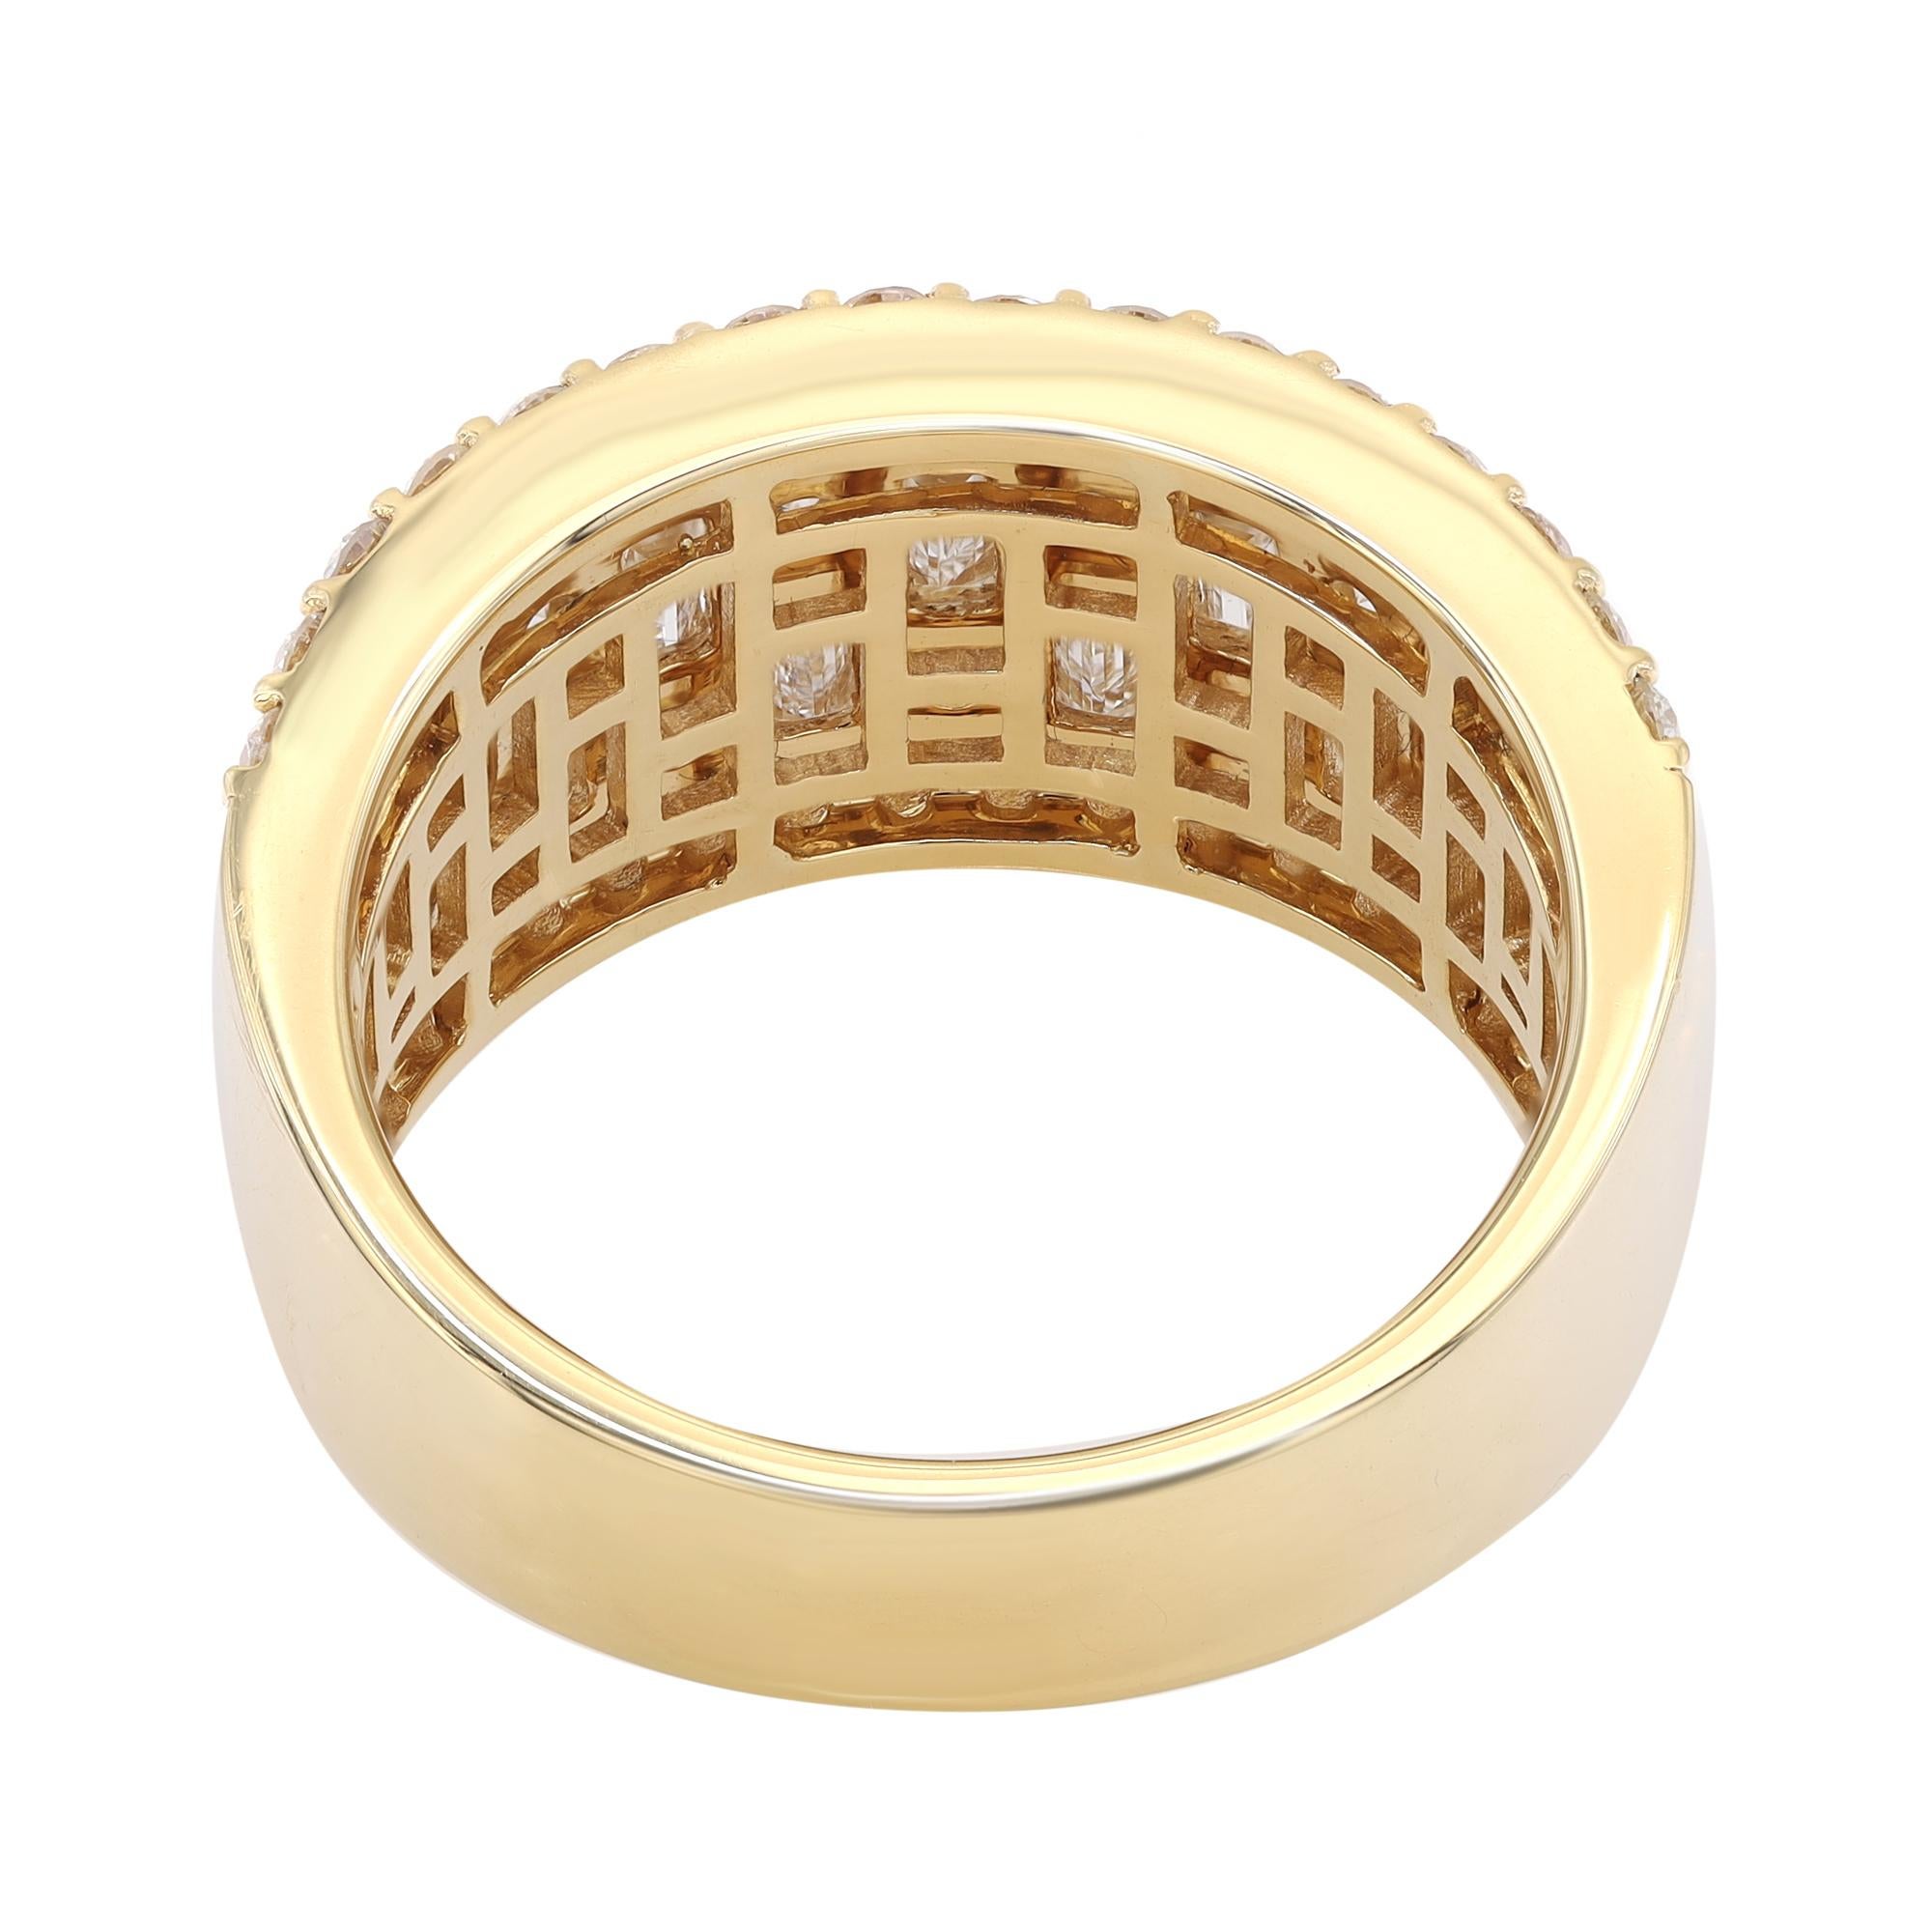 Modern Rachel Koen Baguette Round Cut Diamond Ring 18K Yellow Gold 2.11cttw For Sale